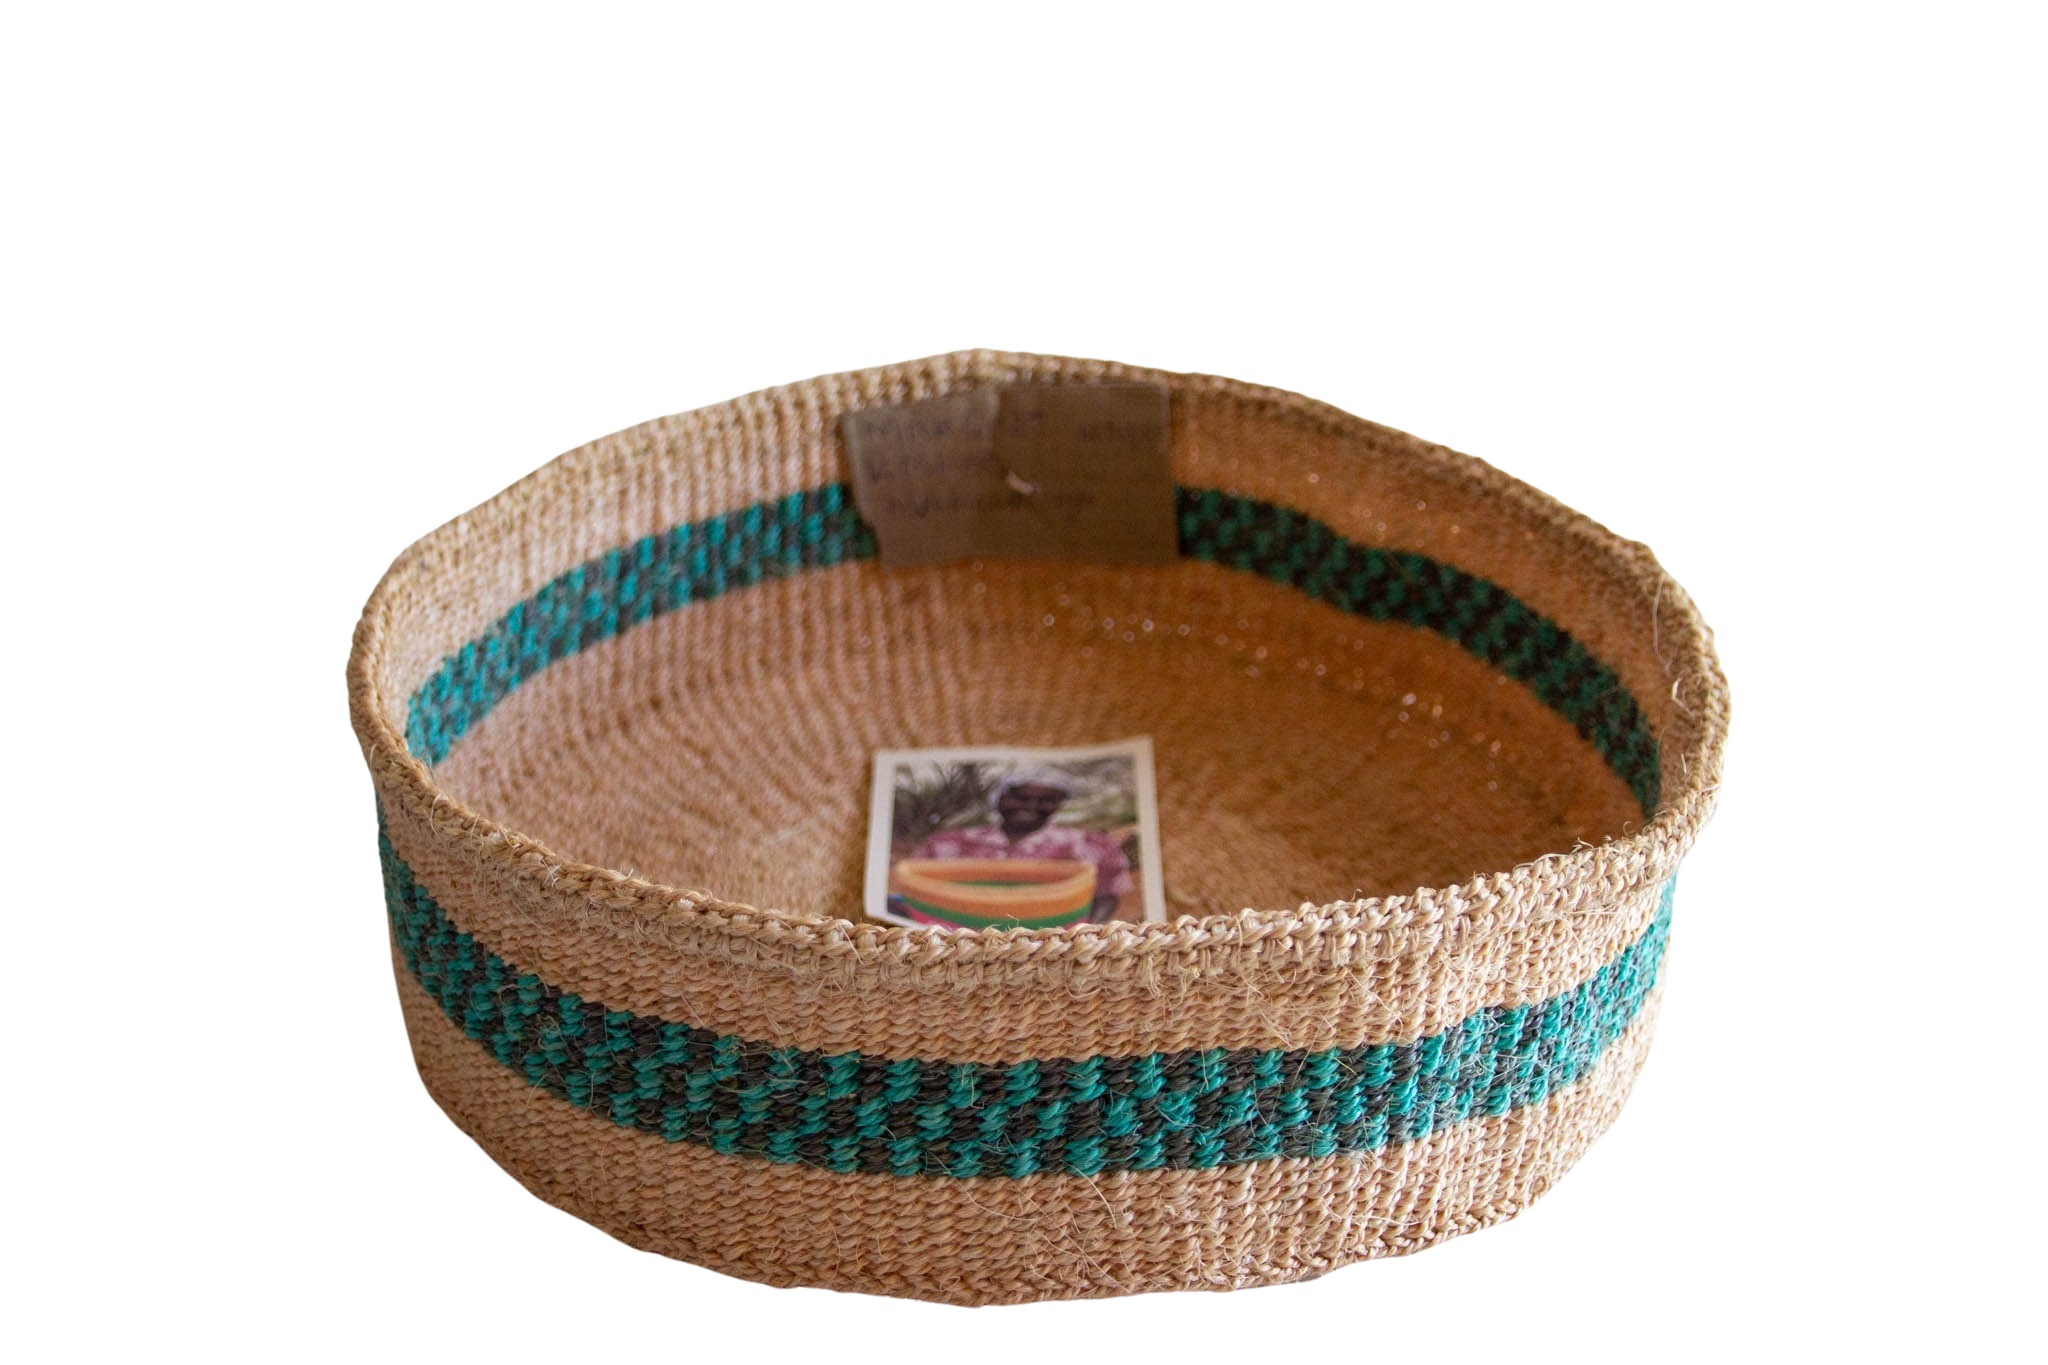 Kenya Turquoise fruit basket of Sisal